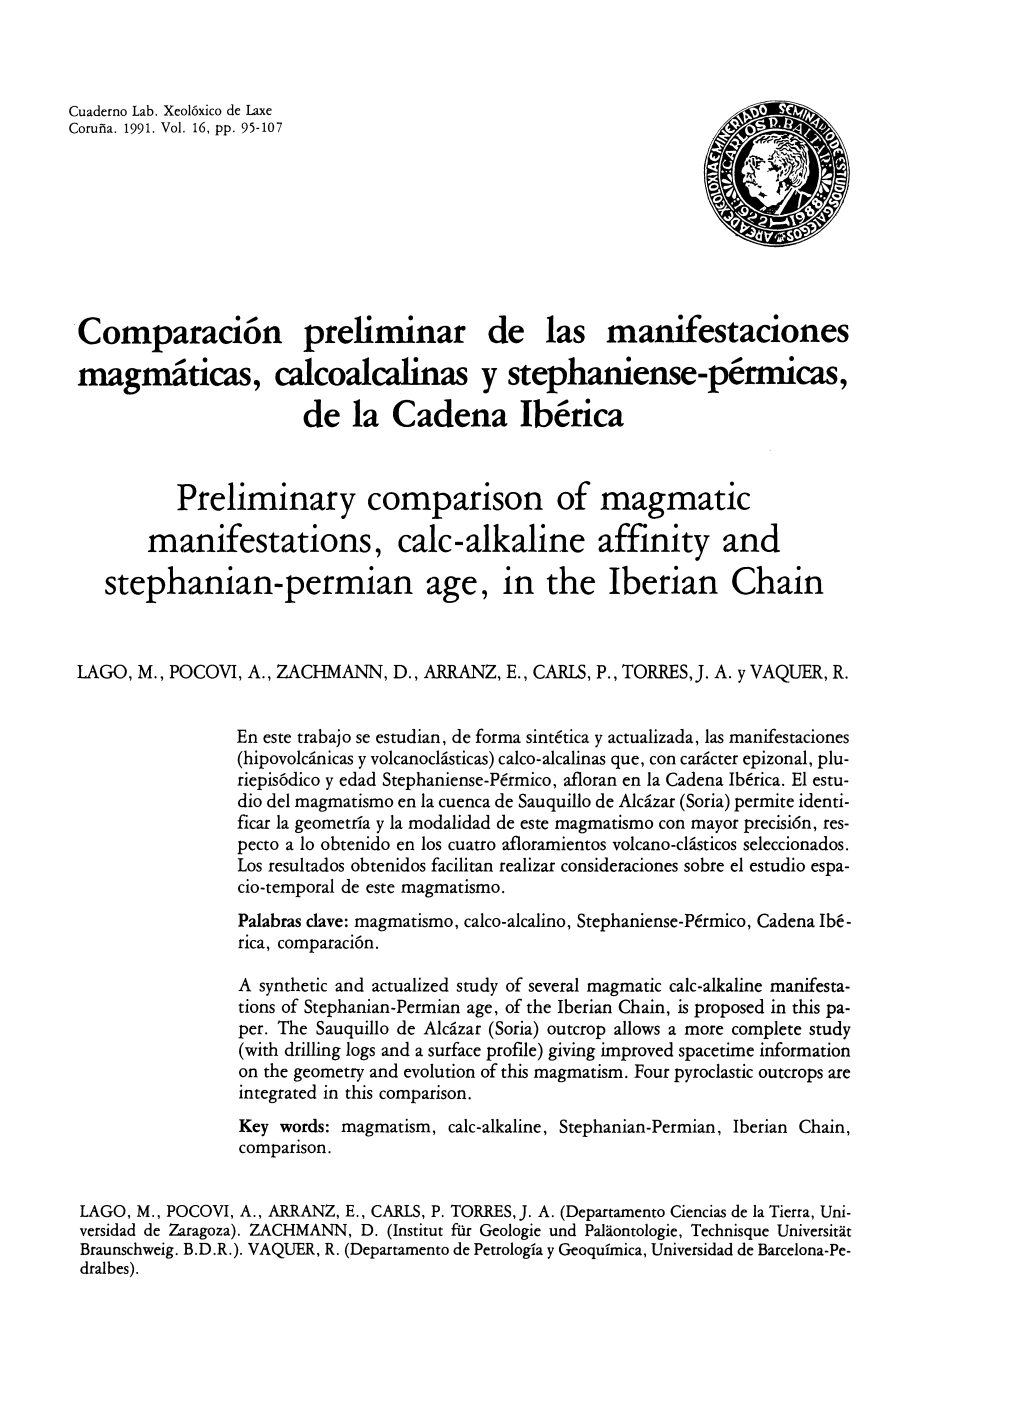 Comparación Preliminar De Las Manifestaciones Magmáticas, Calcoalcalinas Y Stephaniense-Pérmicas De La Cadena Ibérica